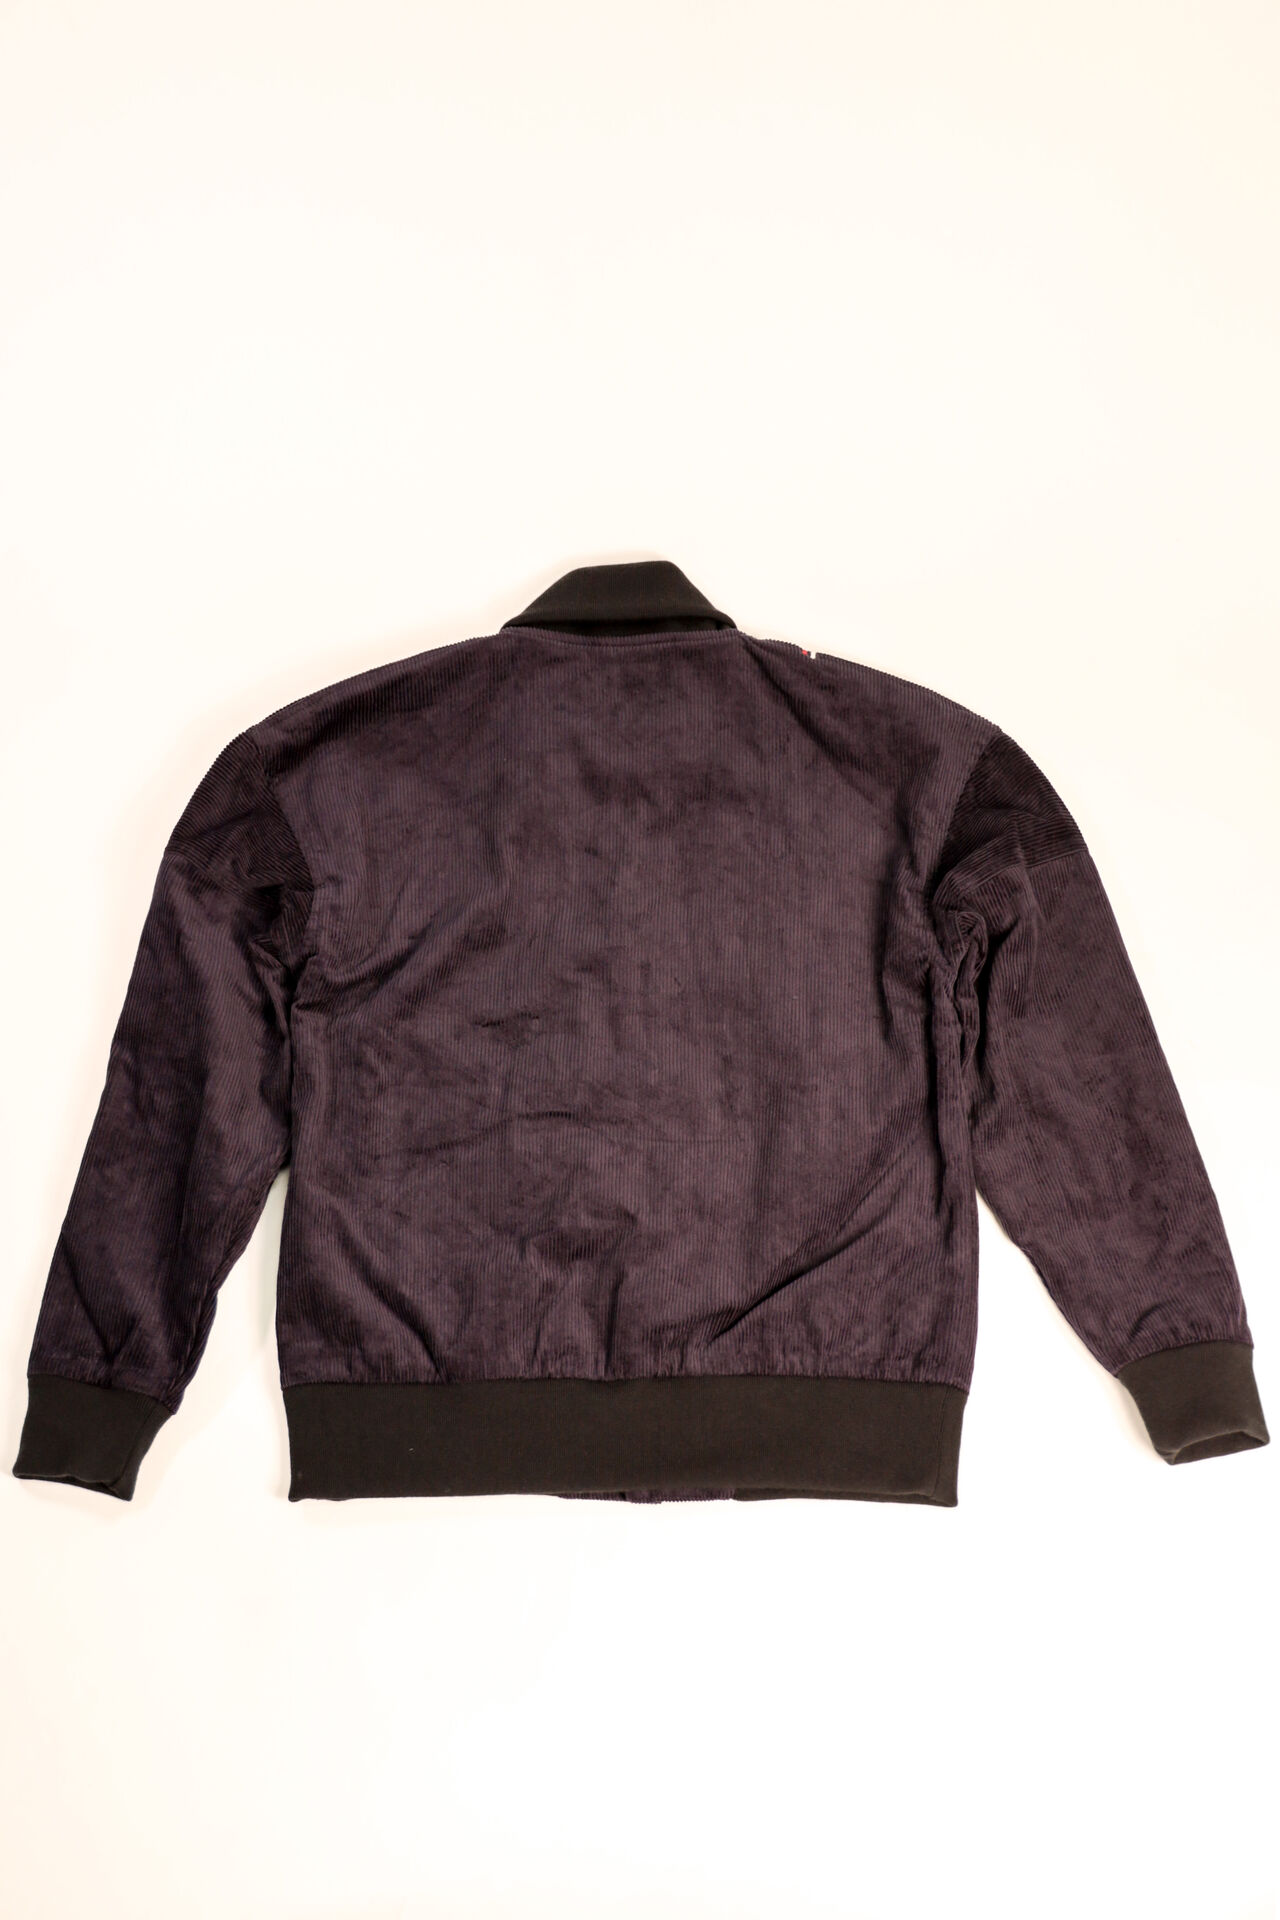 TNK501SZA "Sazanami" Corduroy Jacket (Indigo),, large image number 12